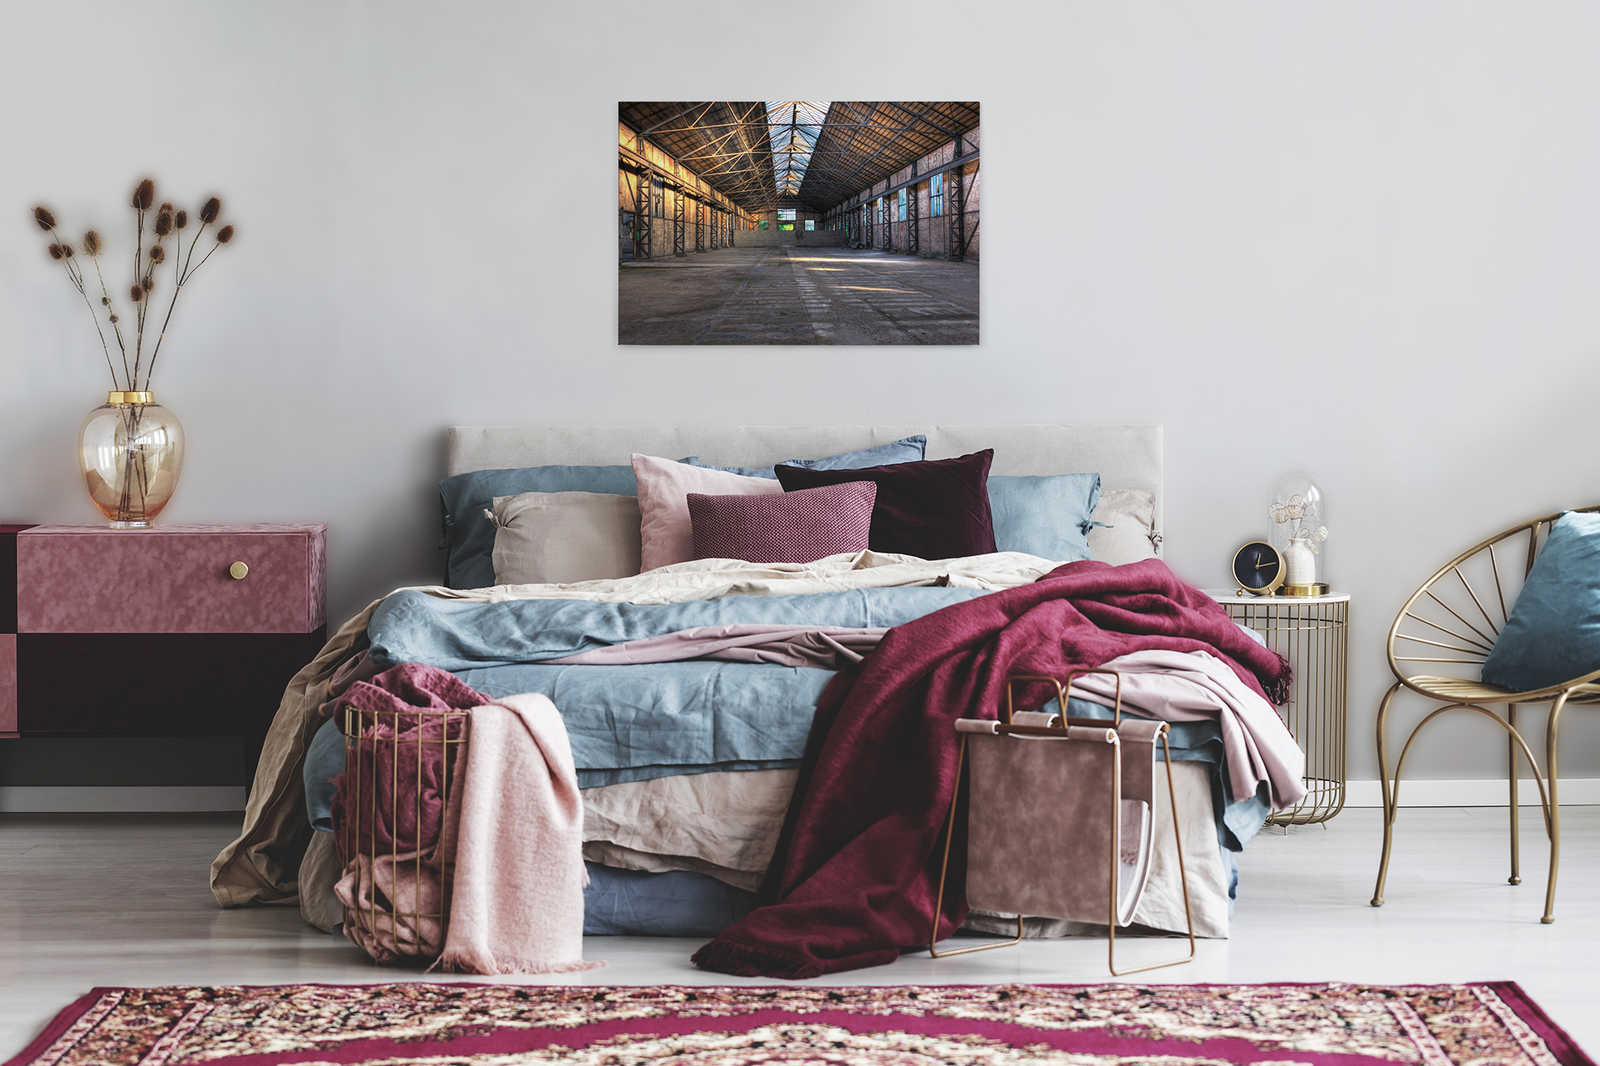             Canvas met verlaten industriële hal met 3D-effect - 0,90 m x 0,60 m
        